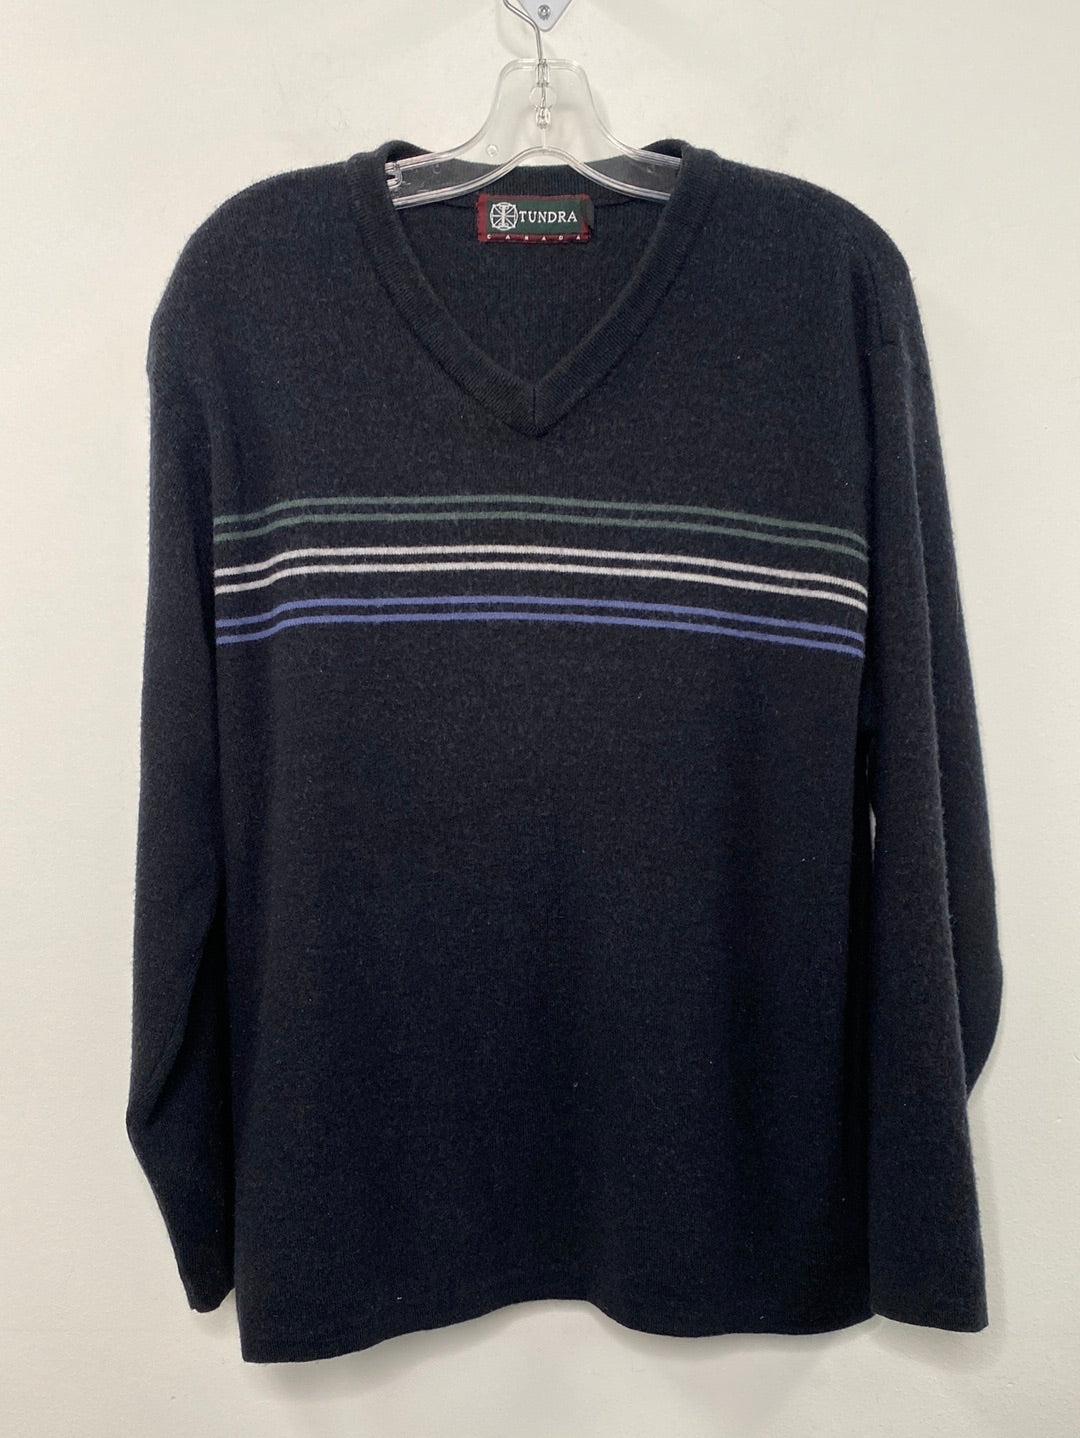 Retro Tundra Sweater (L)